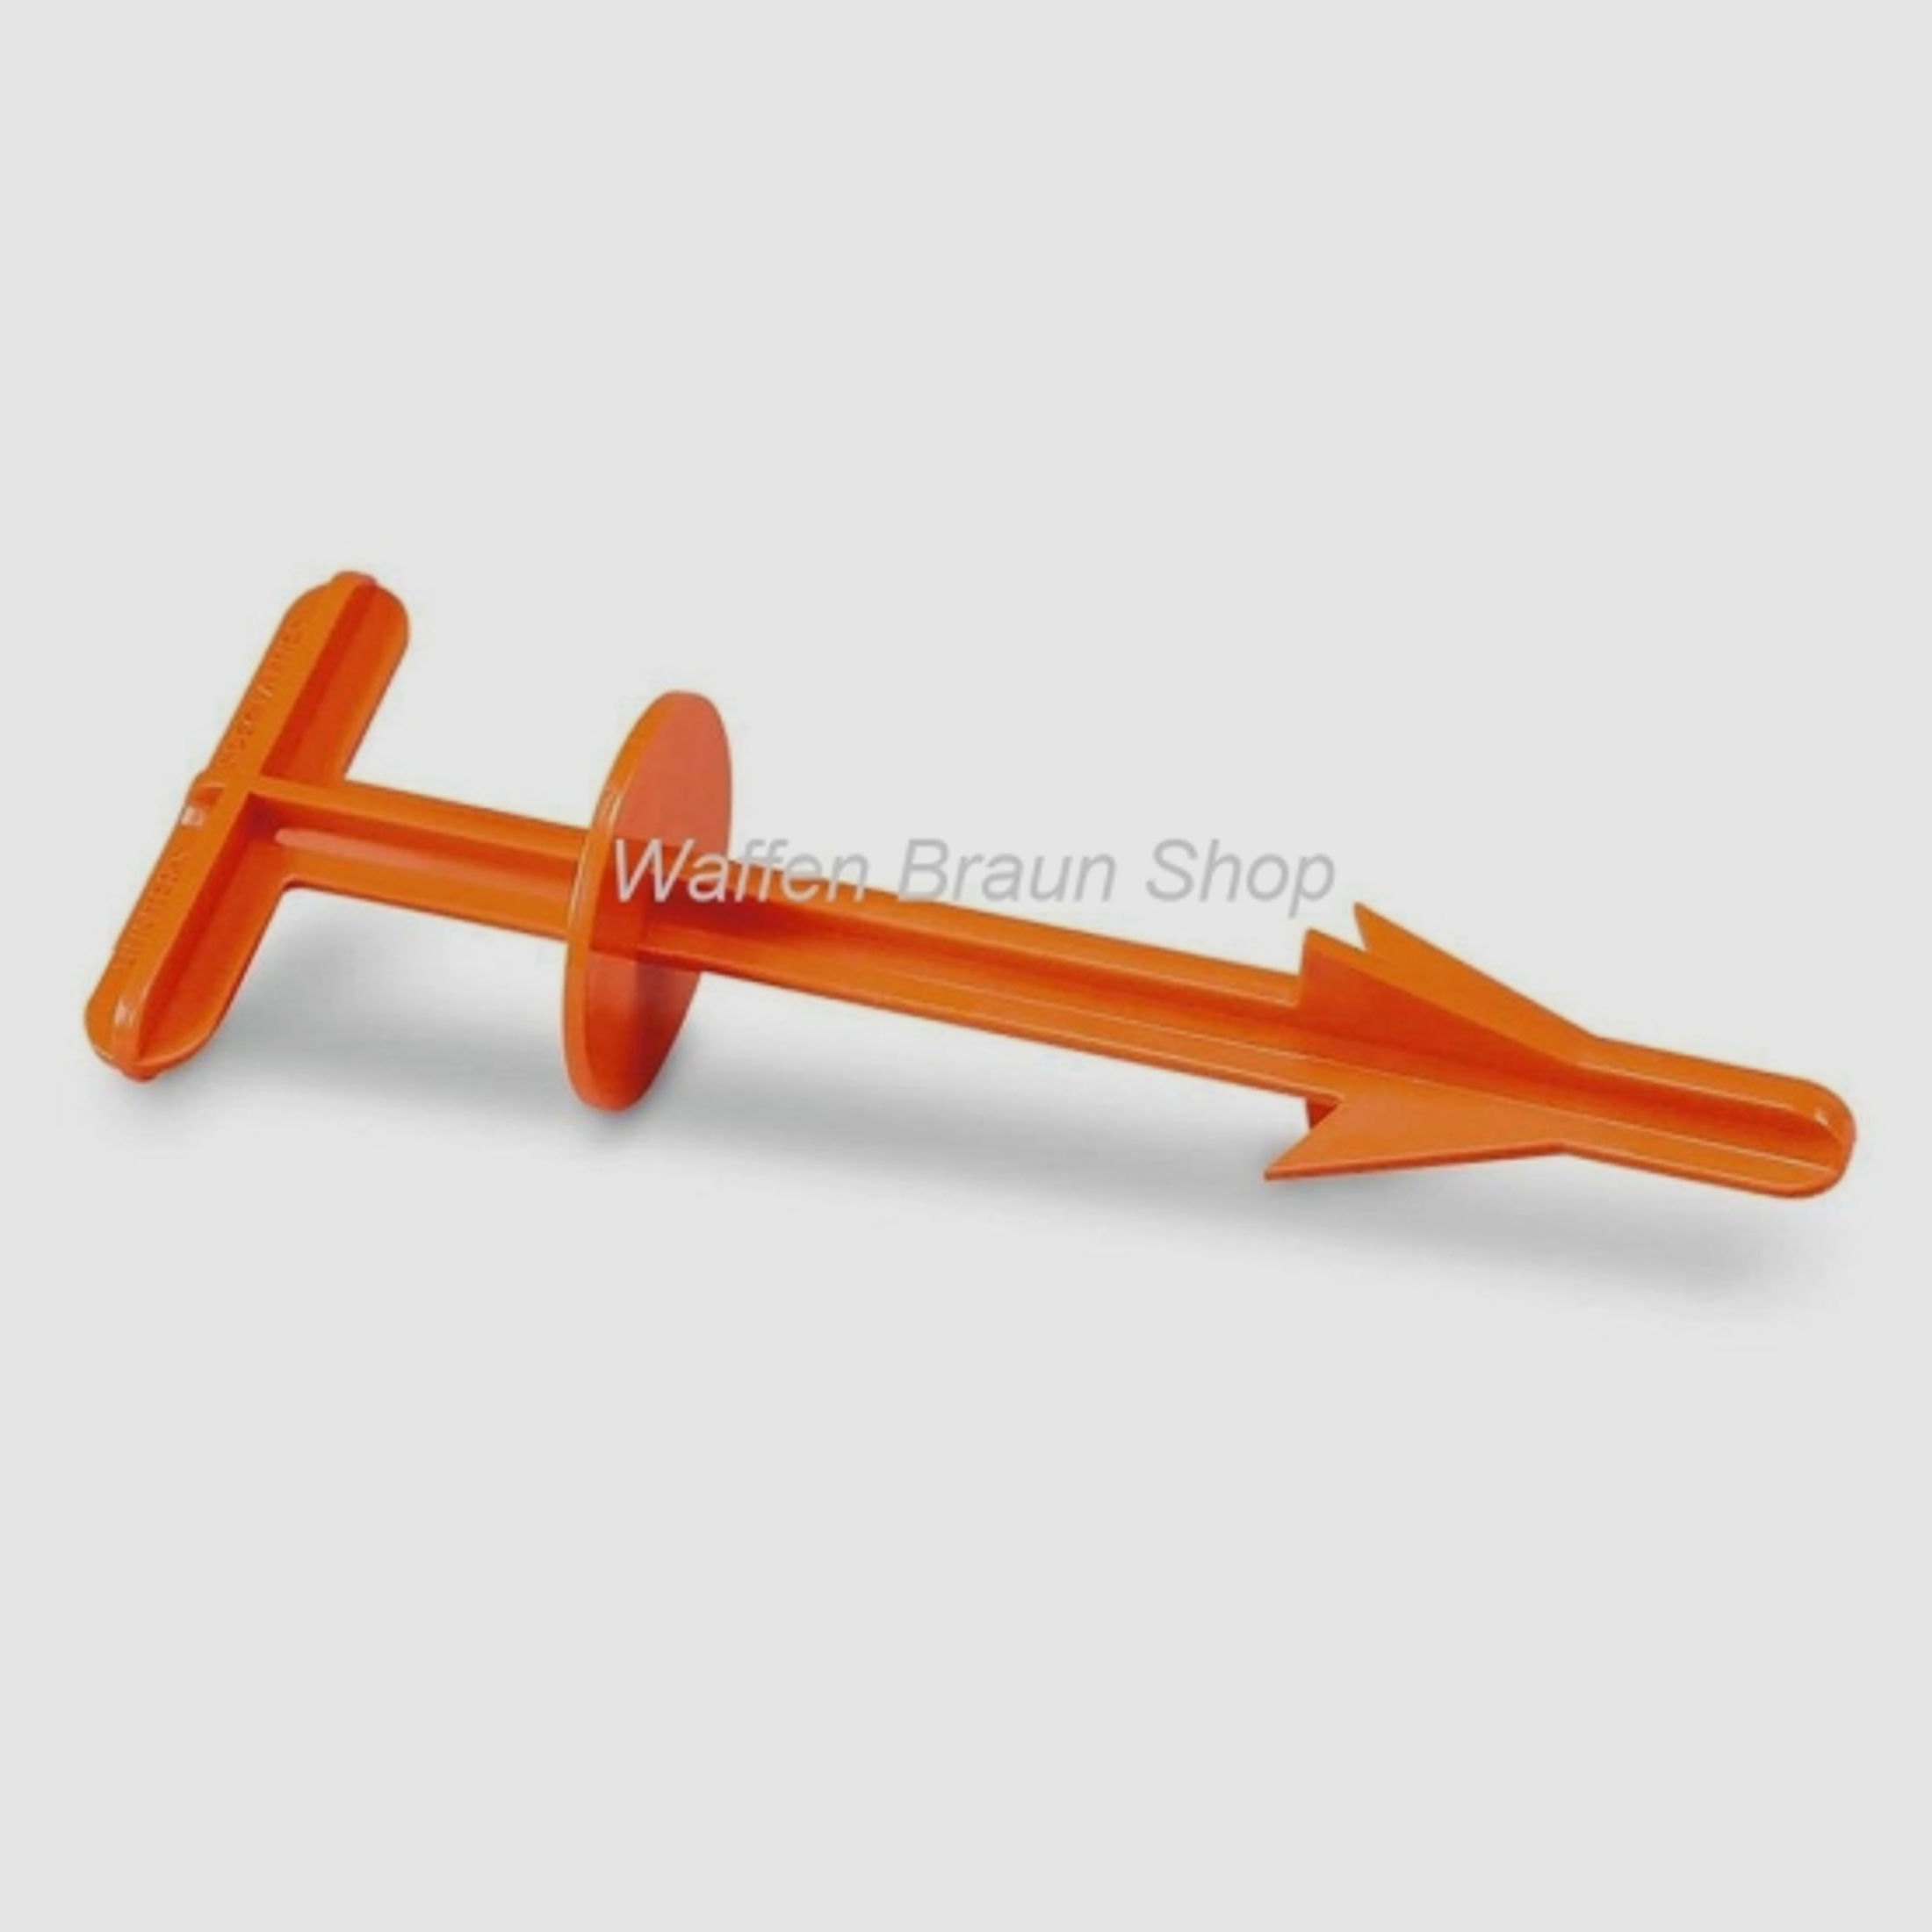 LANDIG Waidlochauslöser aus Kunststoff Farbe Orange Waidlochauslöser zum schnellen und sauberen Ring